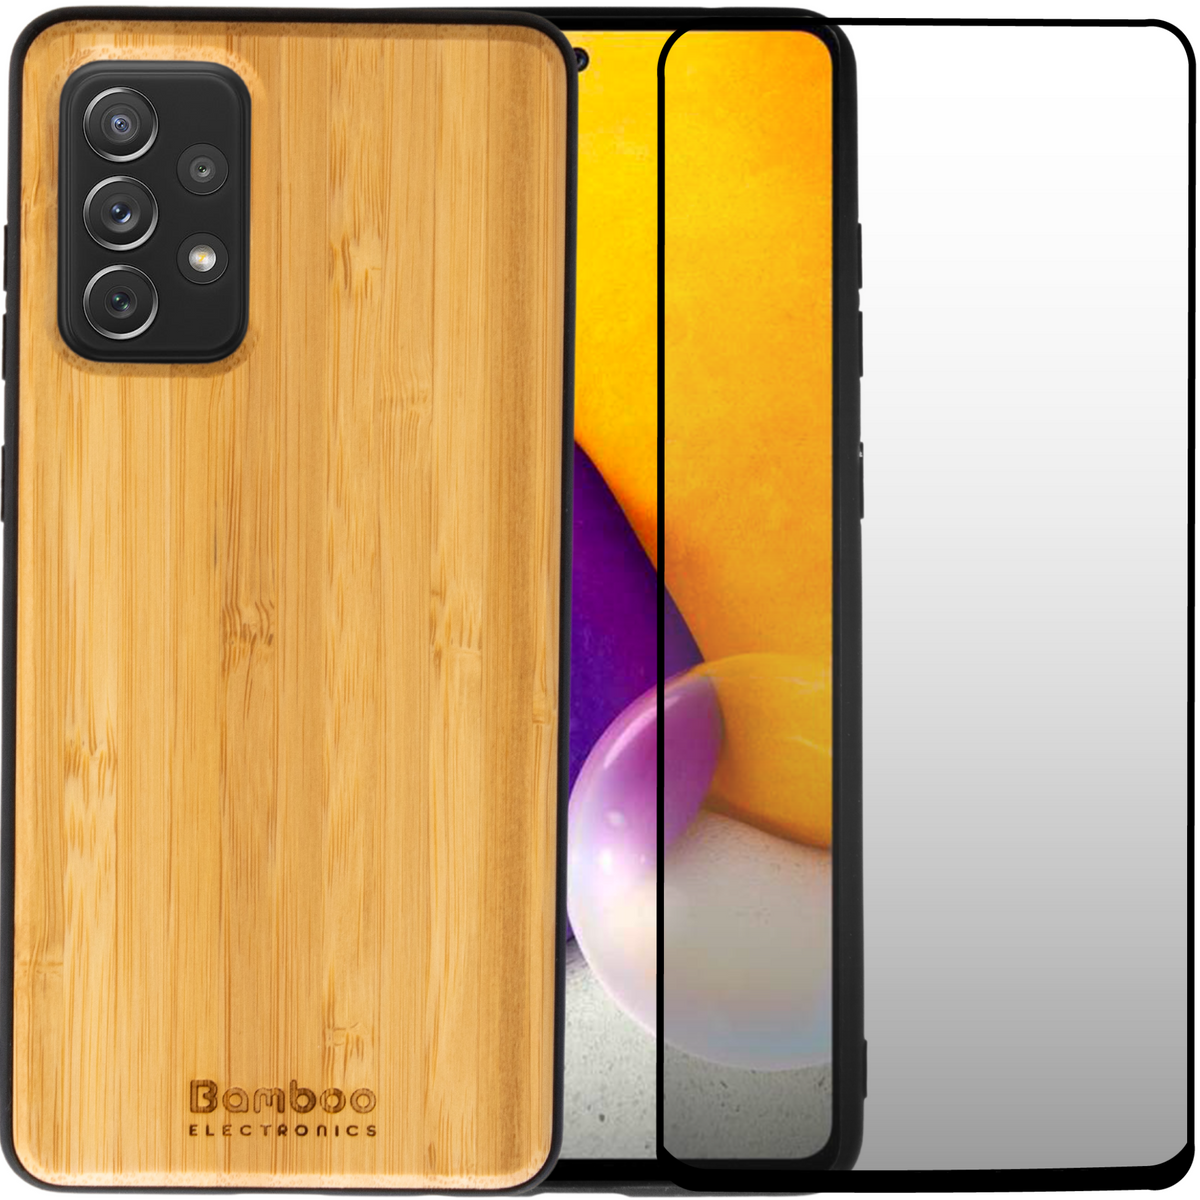 Samsung GA72 Wooden Case + Screen Protector